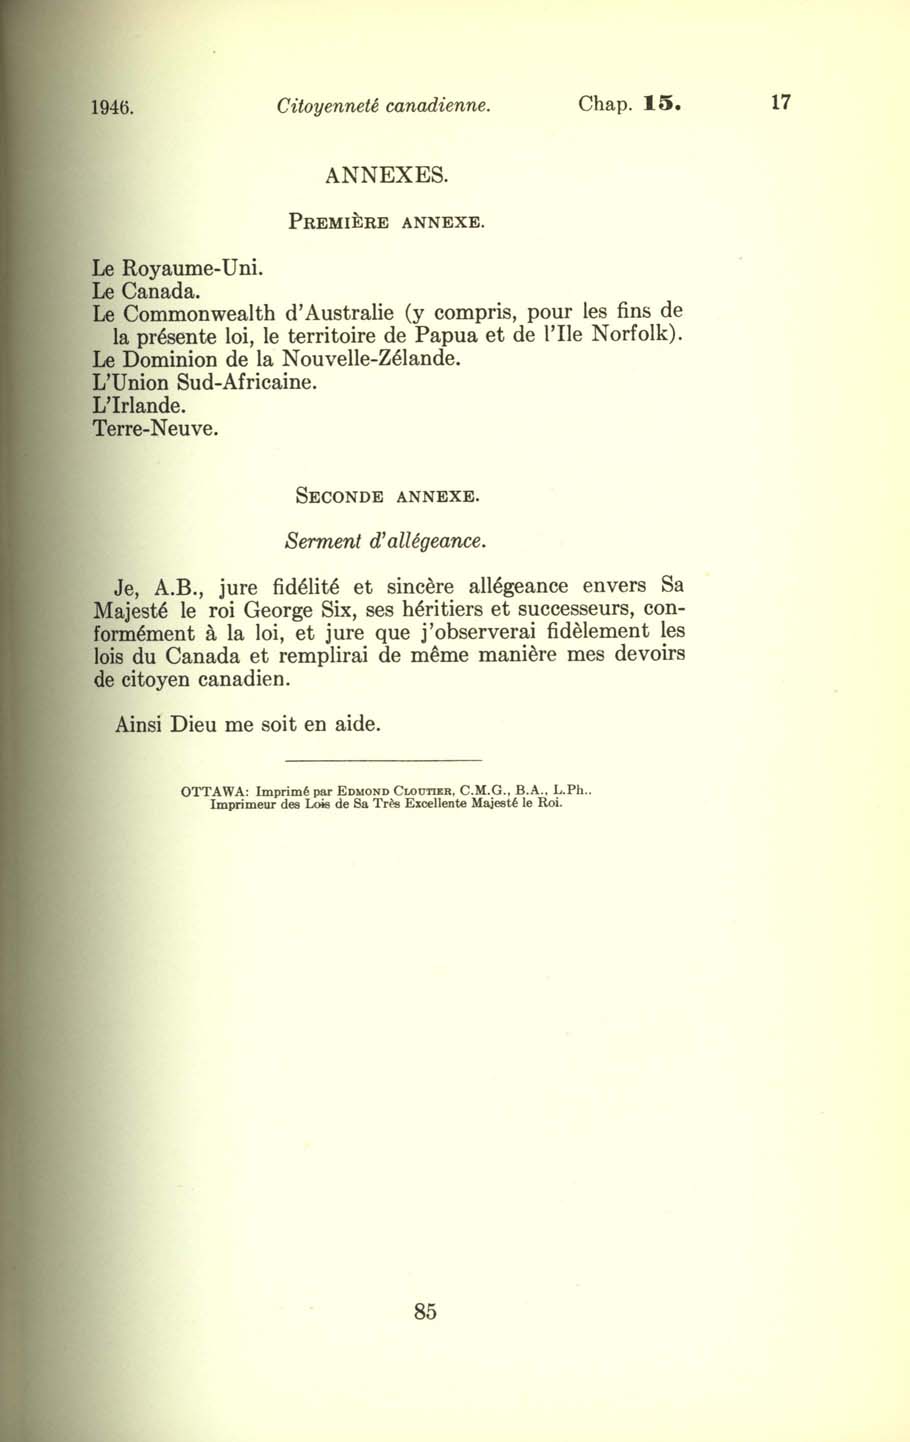 Chap. 15 Page 85 Loi sur la citoyenneté canadienne, 1947